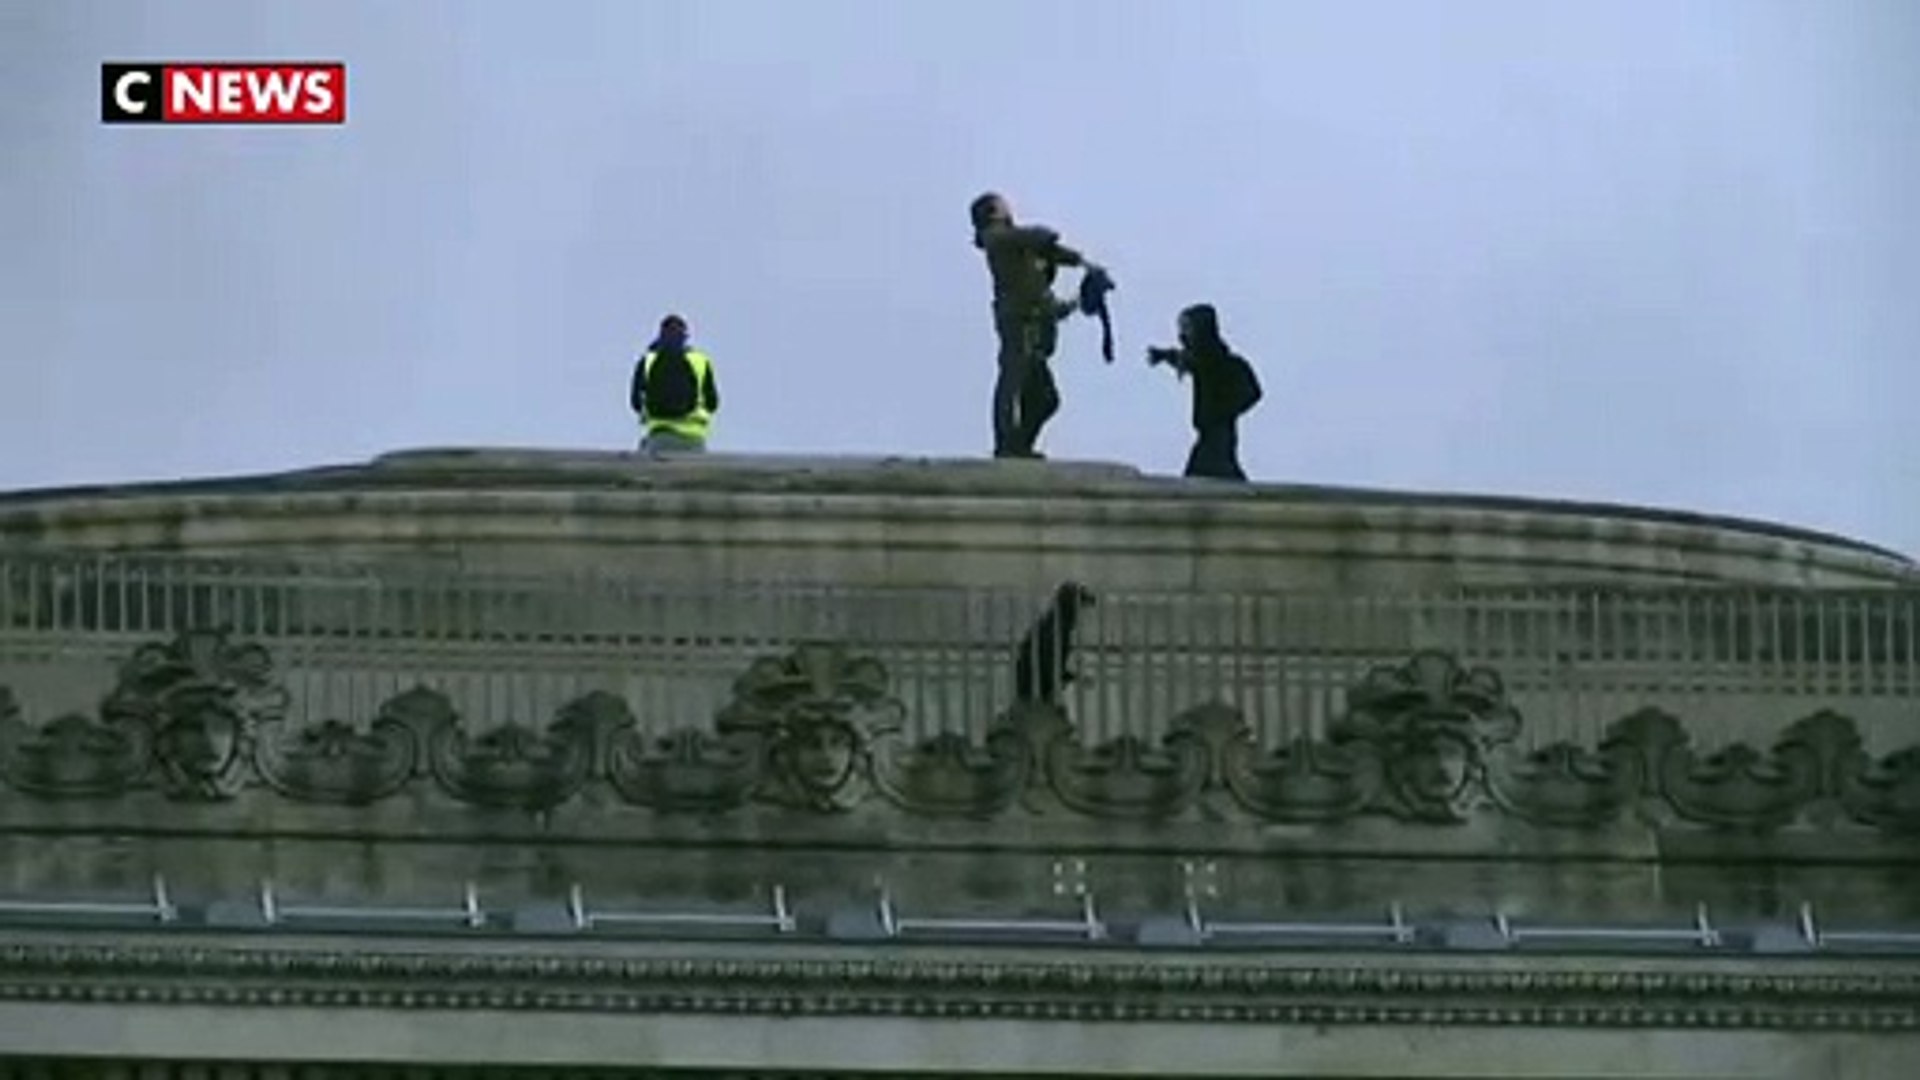 Les gilets jaunes ont pris d'assaut l'Arc de Triomphe - Vidéo Dailymotion